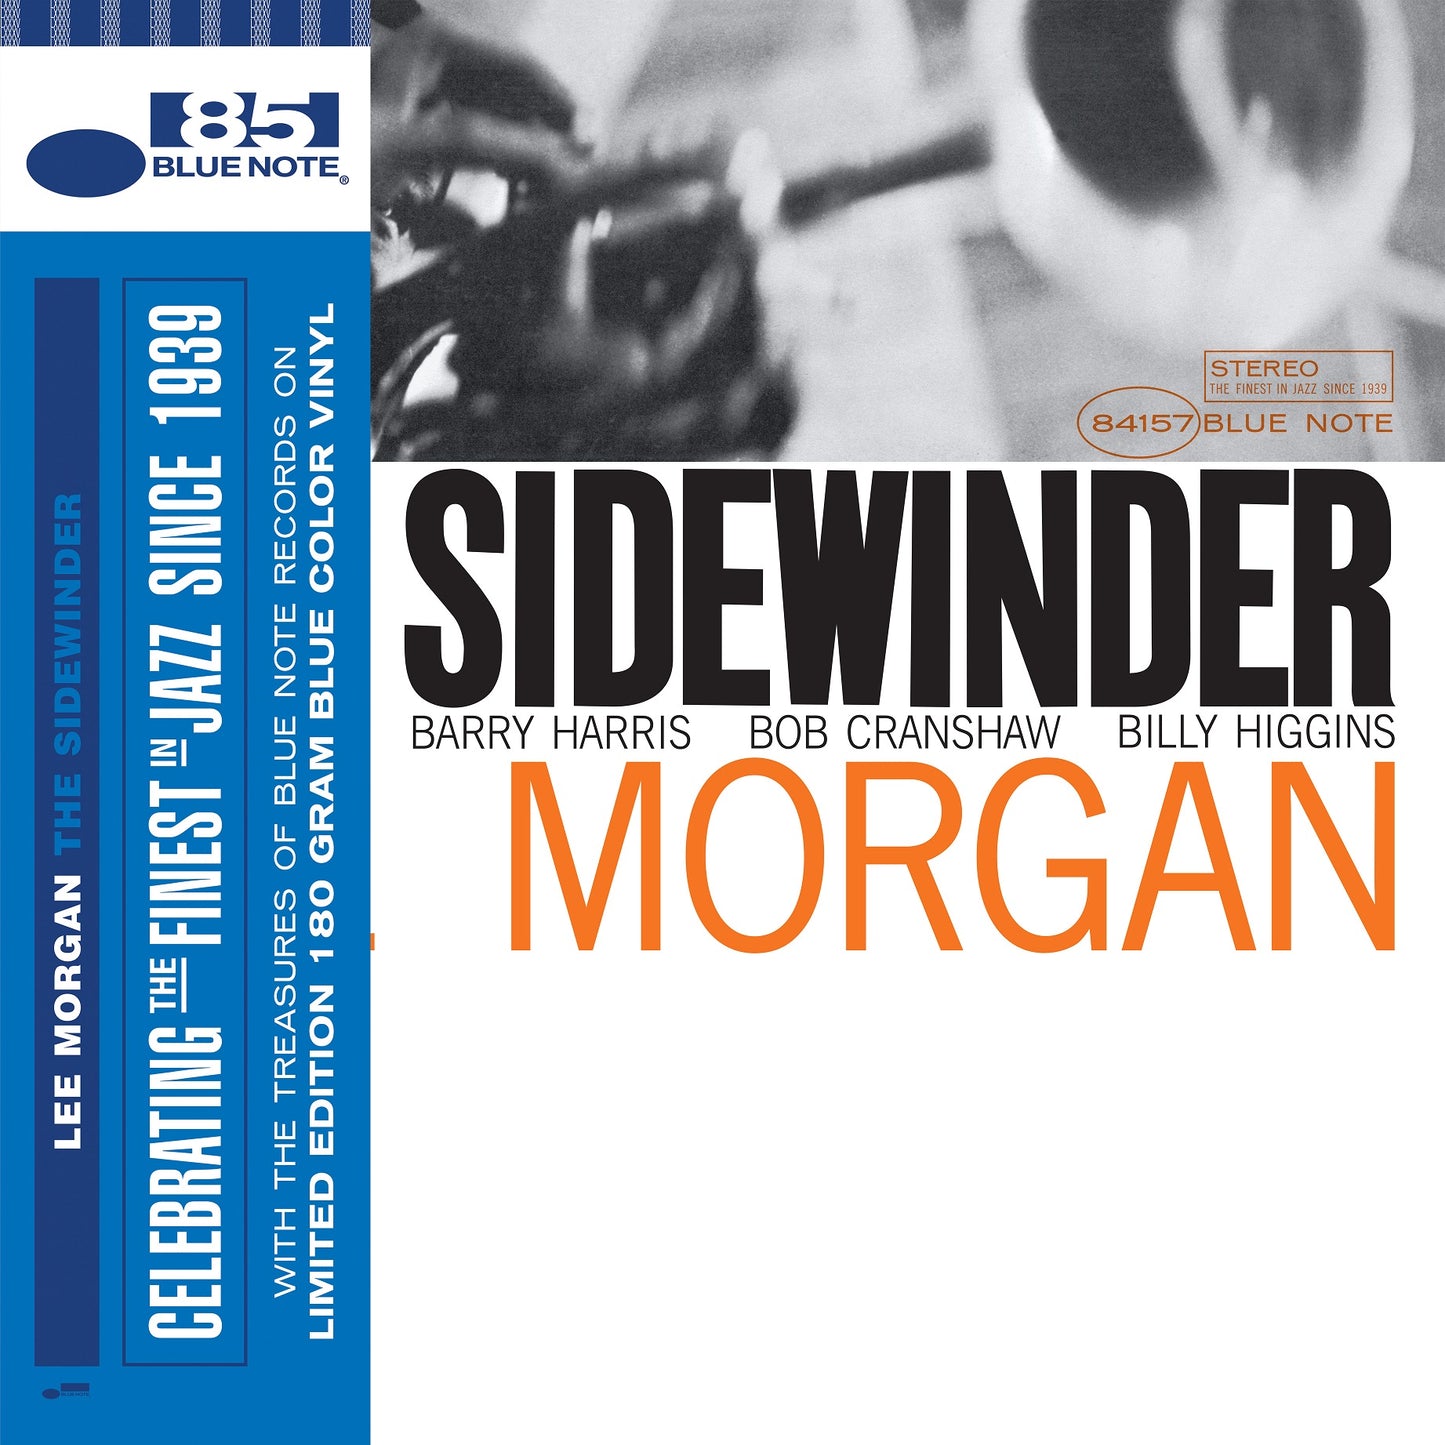 (Pre Order) Lee Morgan - The Sidewinder - Blue Note Classic Indie LP